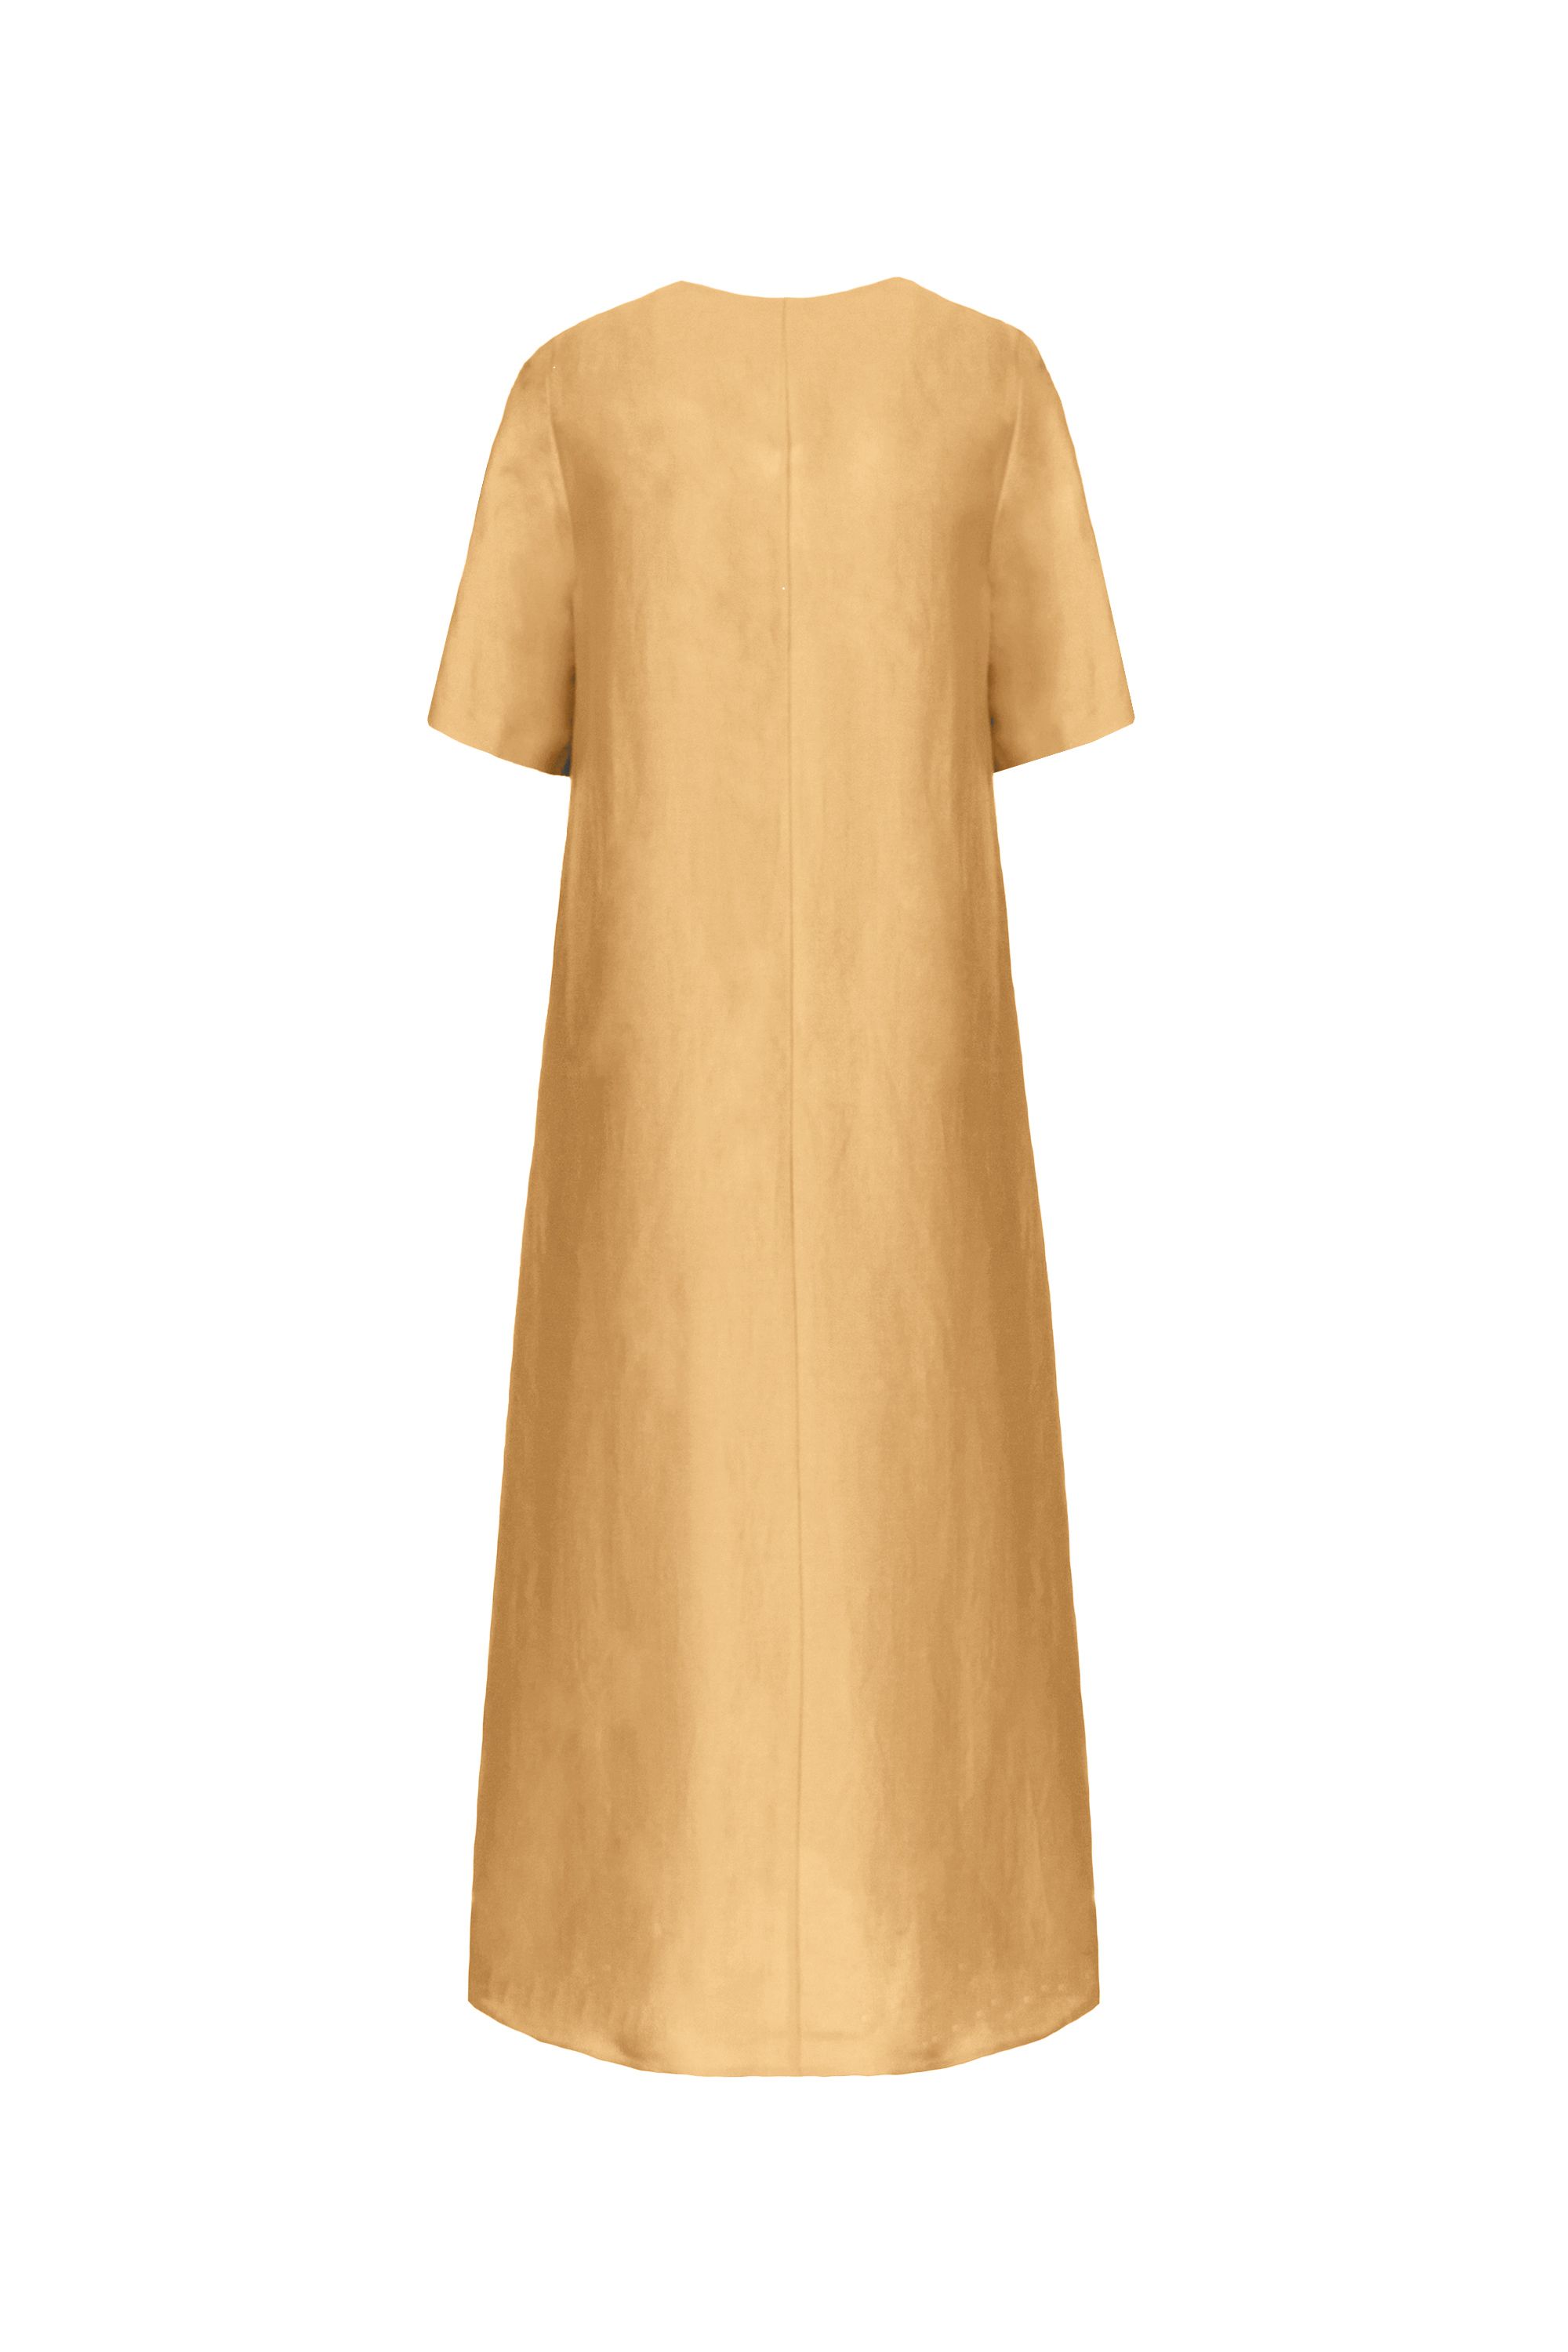 Платье женское 5К-13086-1. Фото 2.